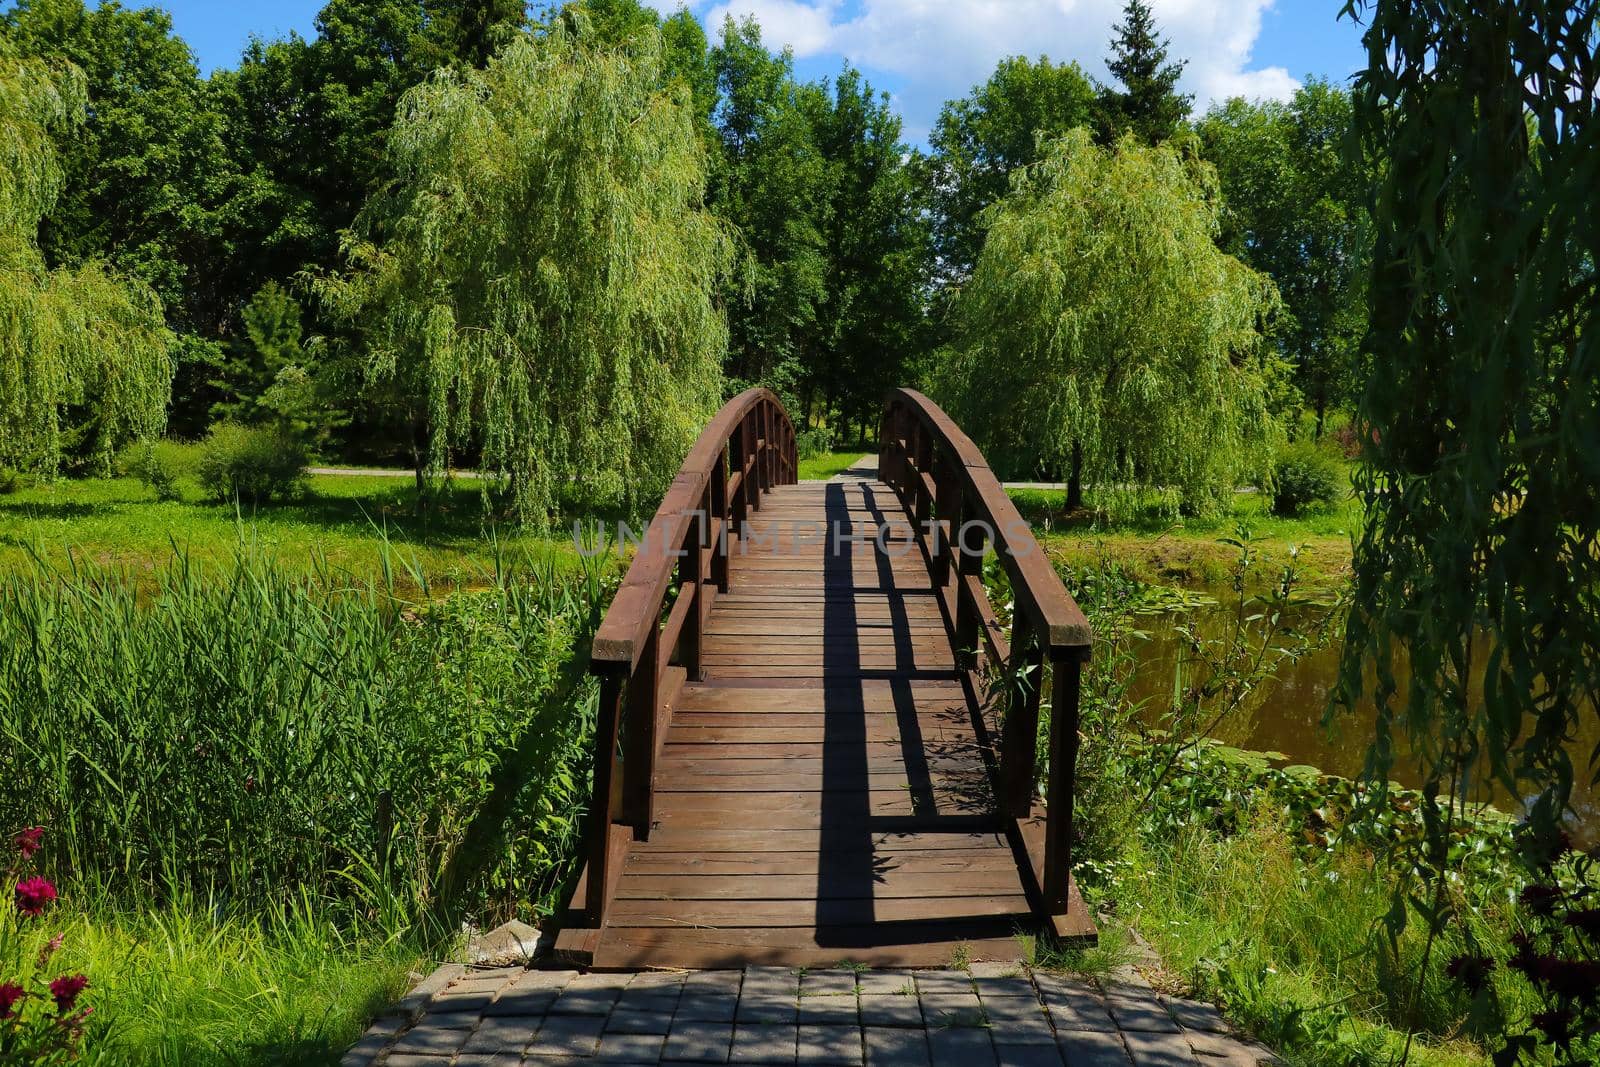 A beautiful wooden walkway across the lake. by kip02kas